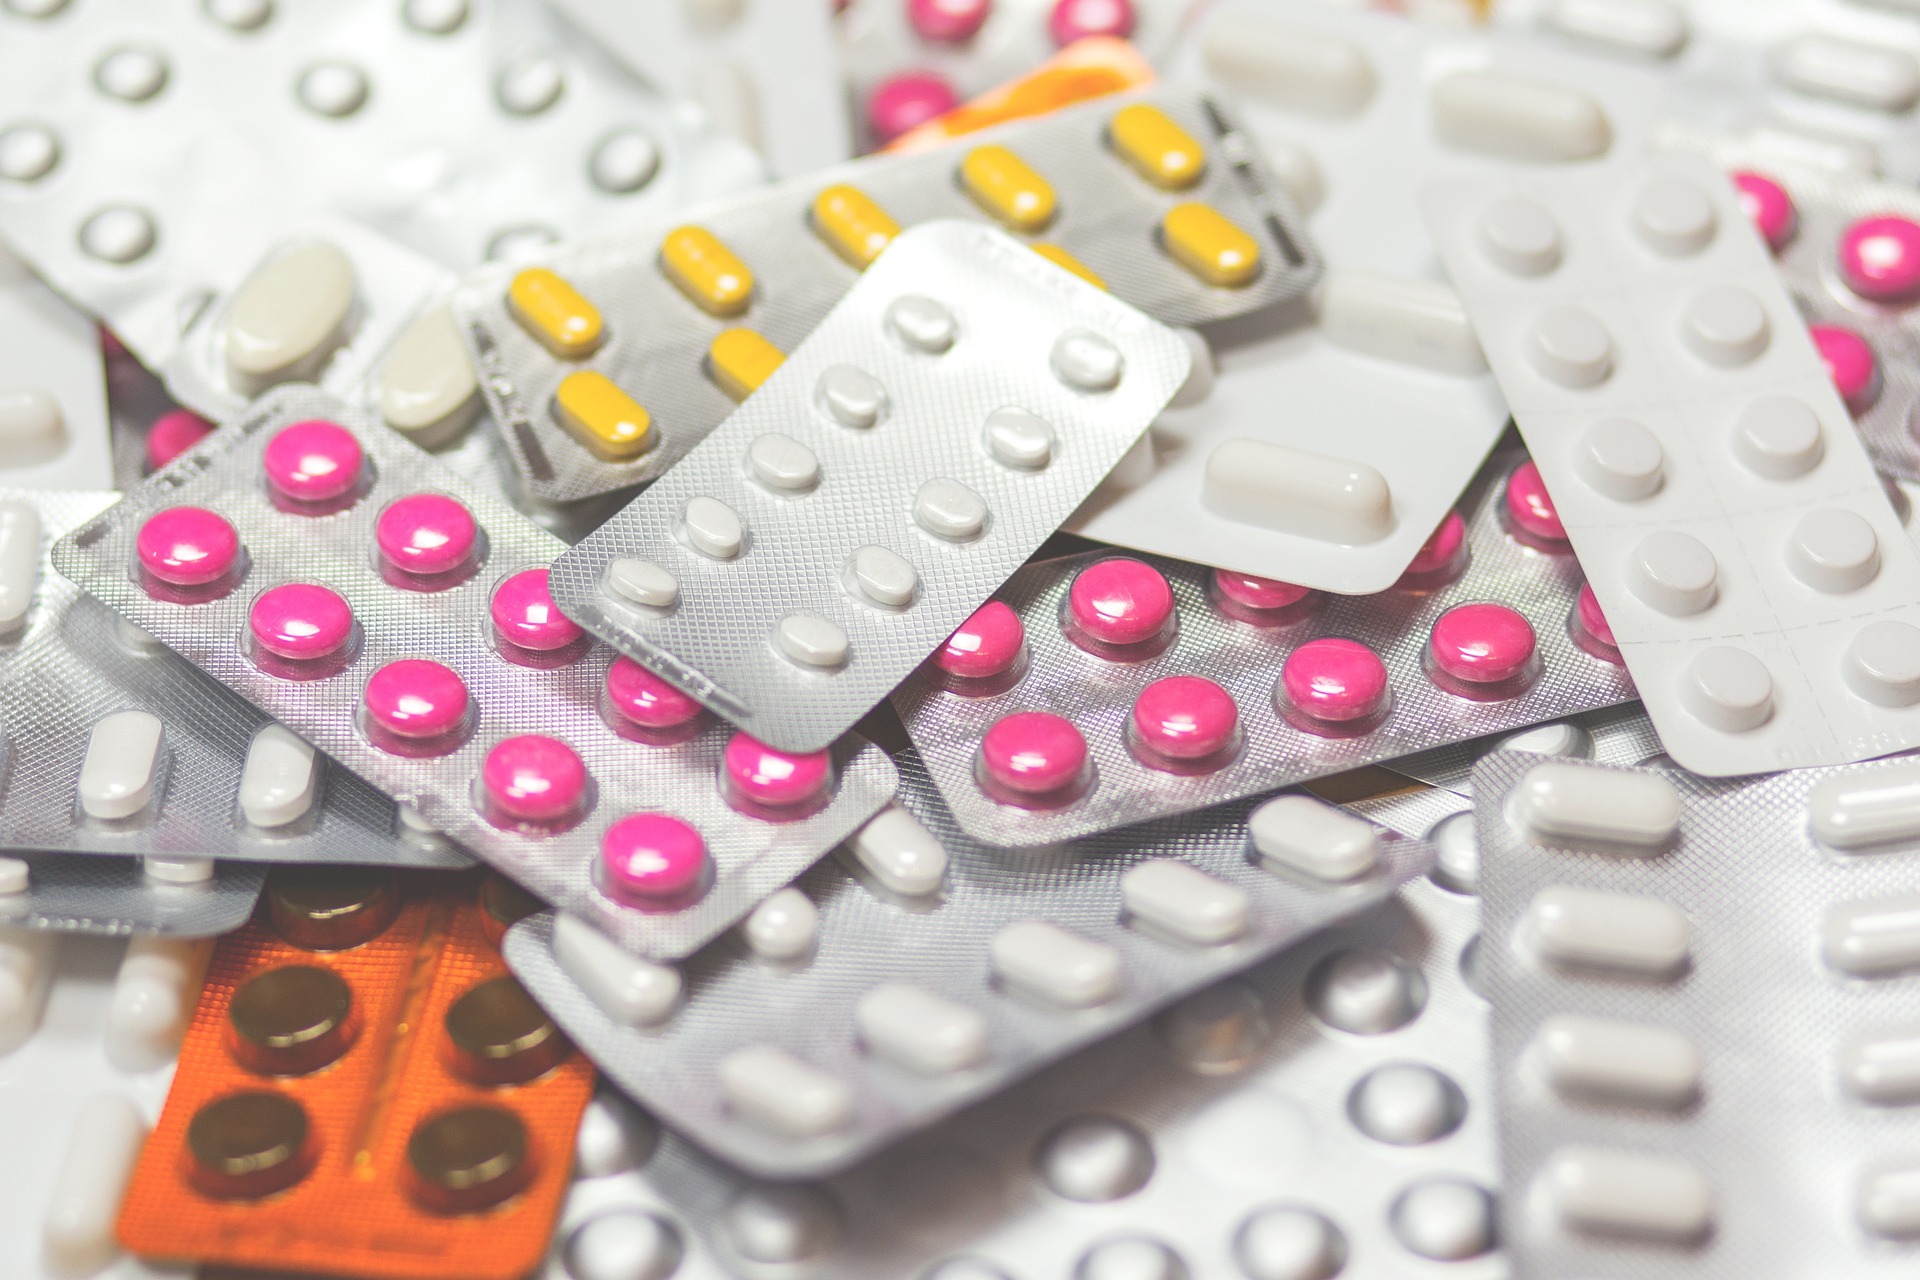 Ministerului Sănătății vrea să oblige farmaciile să raporteze zilnic toate operațiunile cu antibiotice